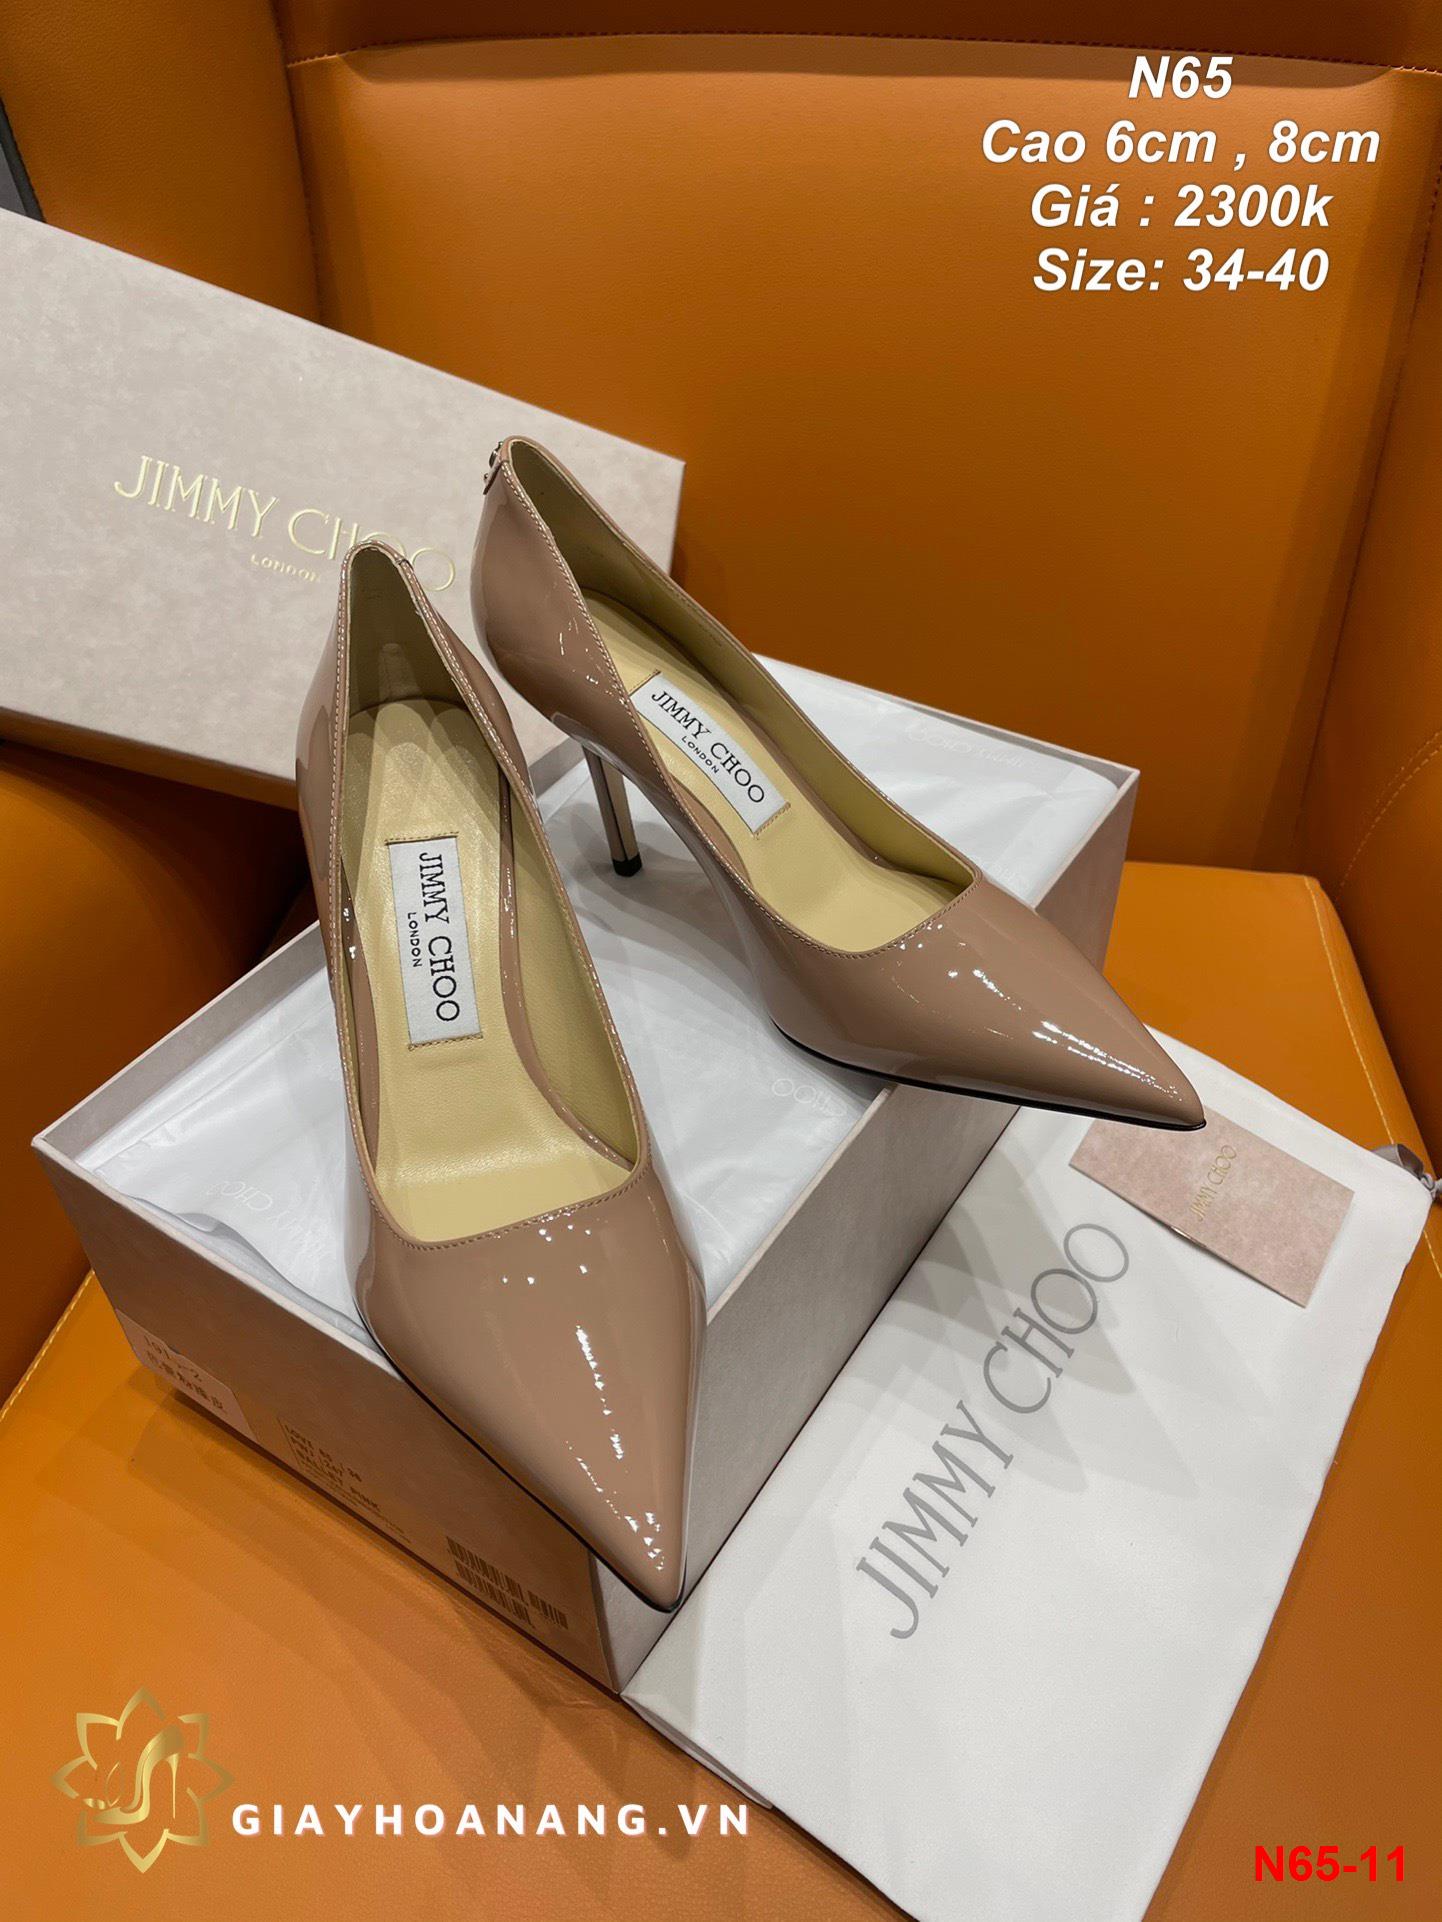 N65-11 Jimmy Choo giày cao 6cm , 8cm siêu cấp